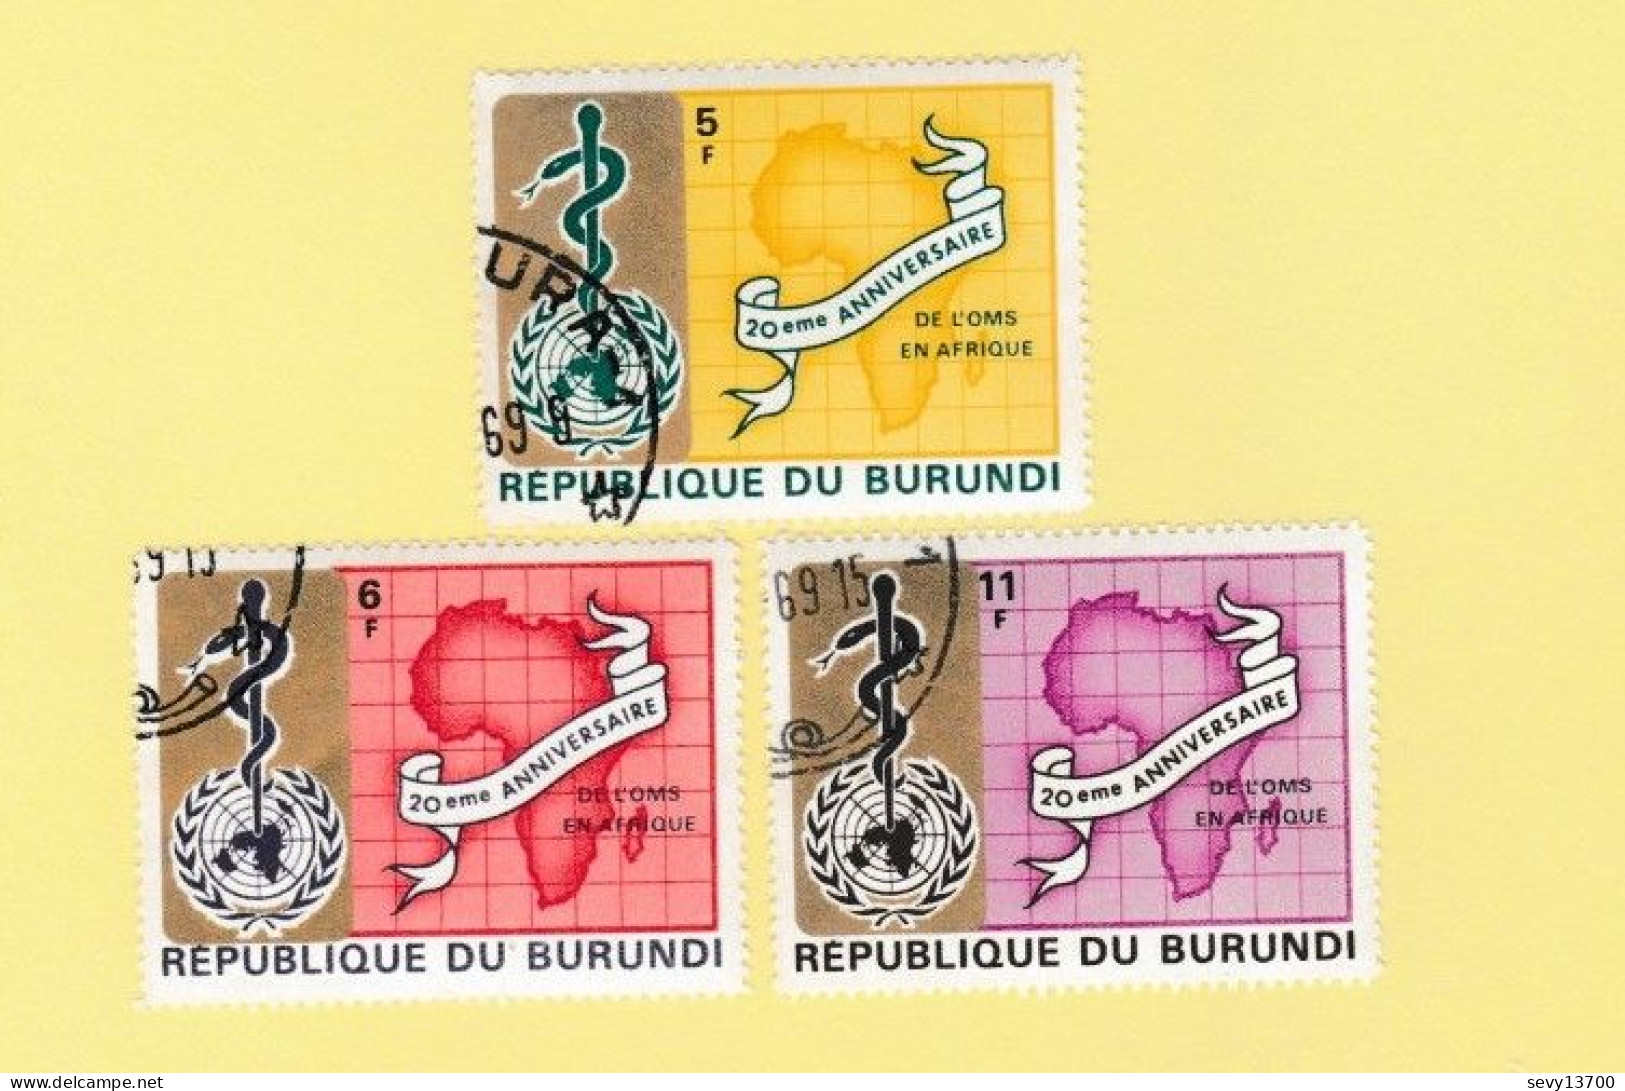 Burundi 49 Timbres Les Droits De L'homme Interpol Nations Unis OMS Lutte Contre La Tuberculose Contre La Faim Education - Collections